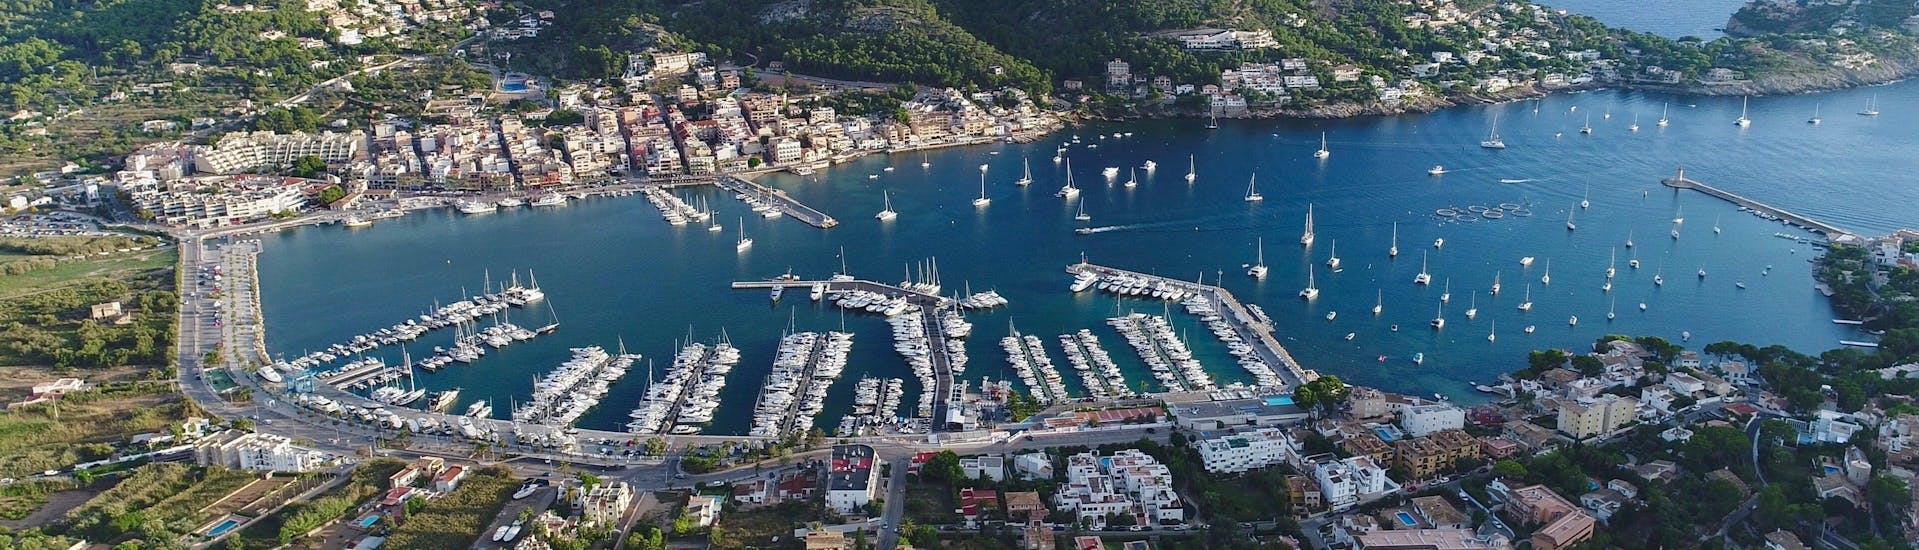 Uitzicht op Port d'Andratx, Mallorca, een prachtige vakantiebestemming. 